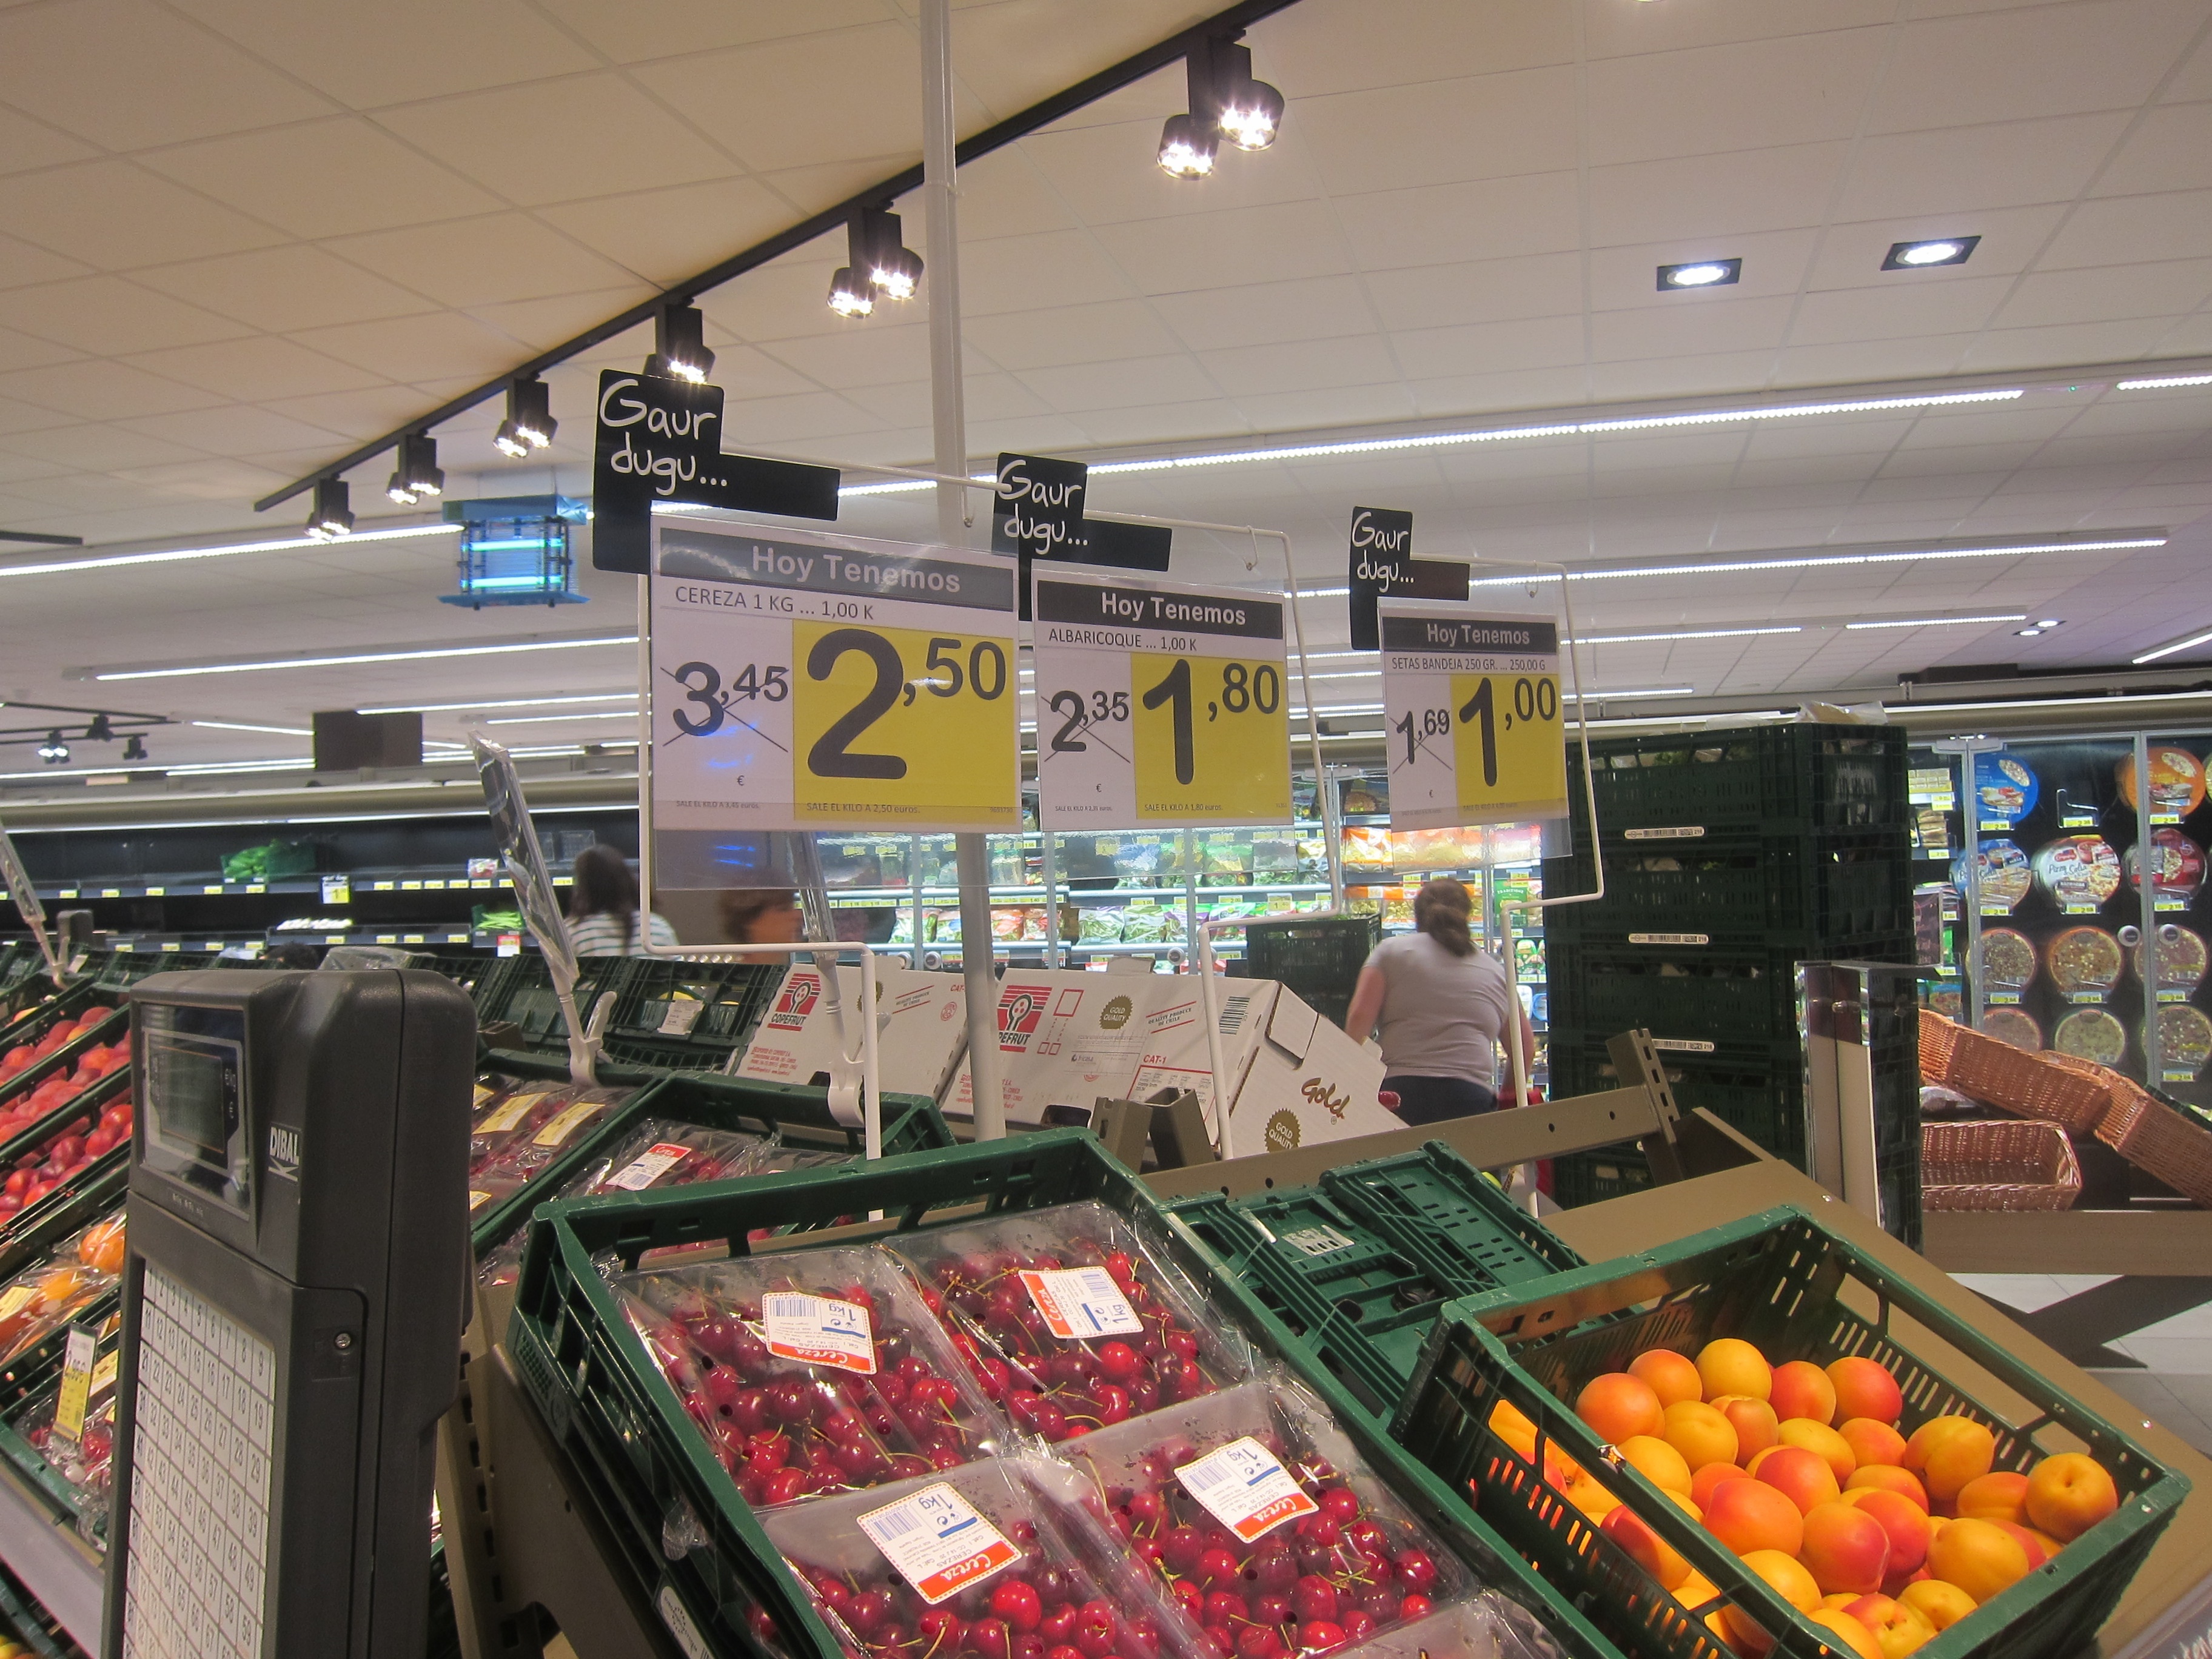 Un supermercado de Eroski será el primer establecimiento con cero consumo eléctrico de España